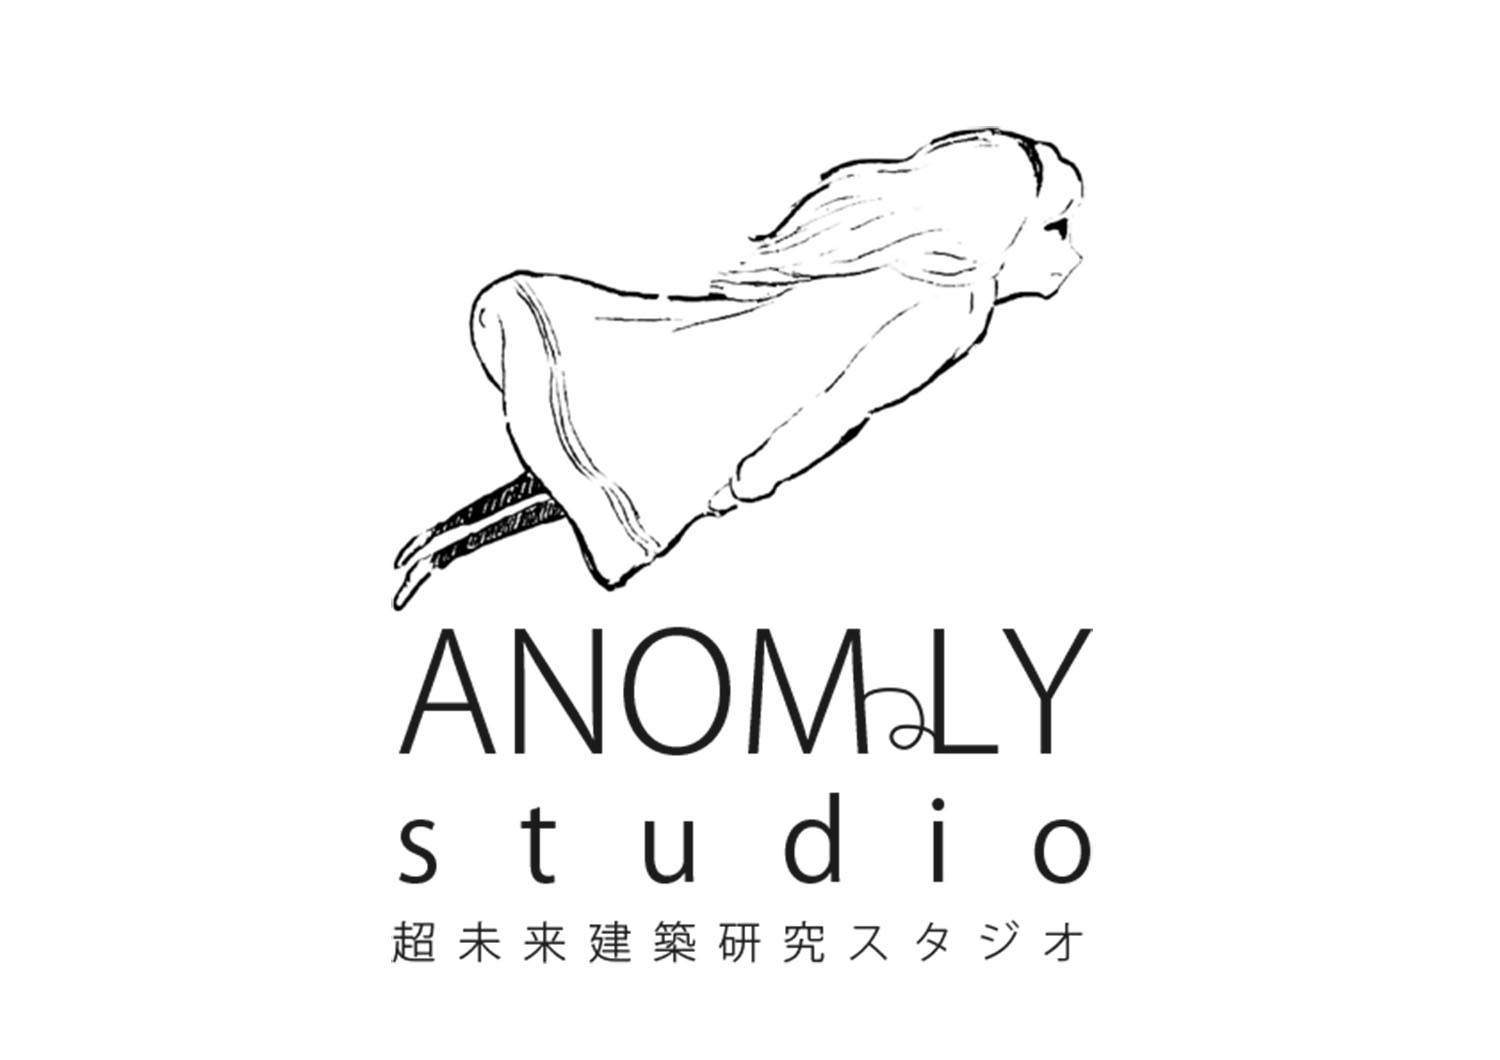 ANOMaLY studio